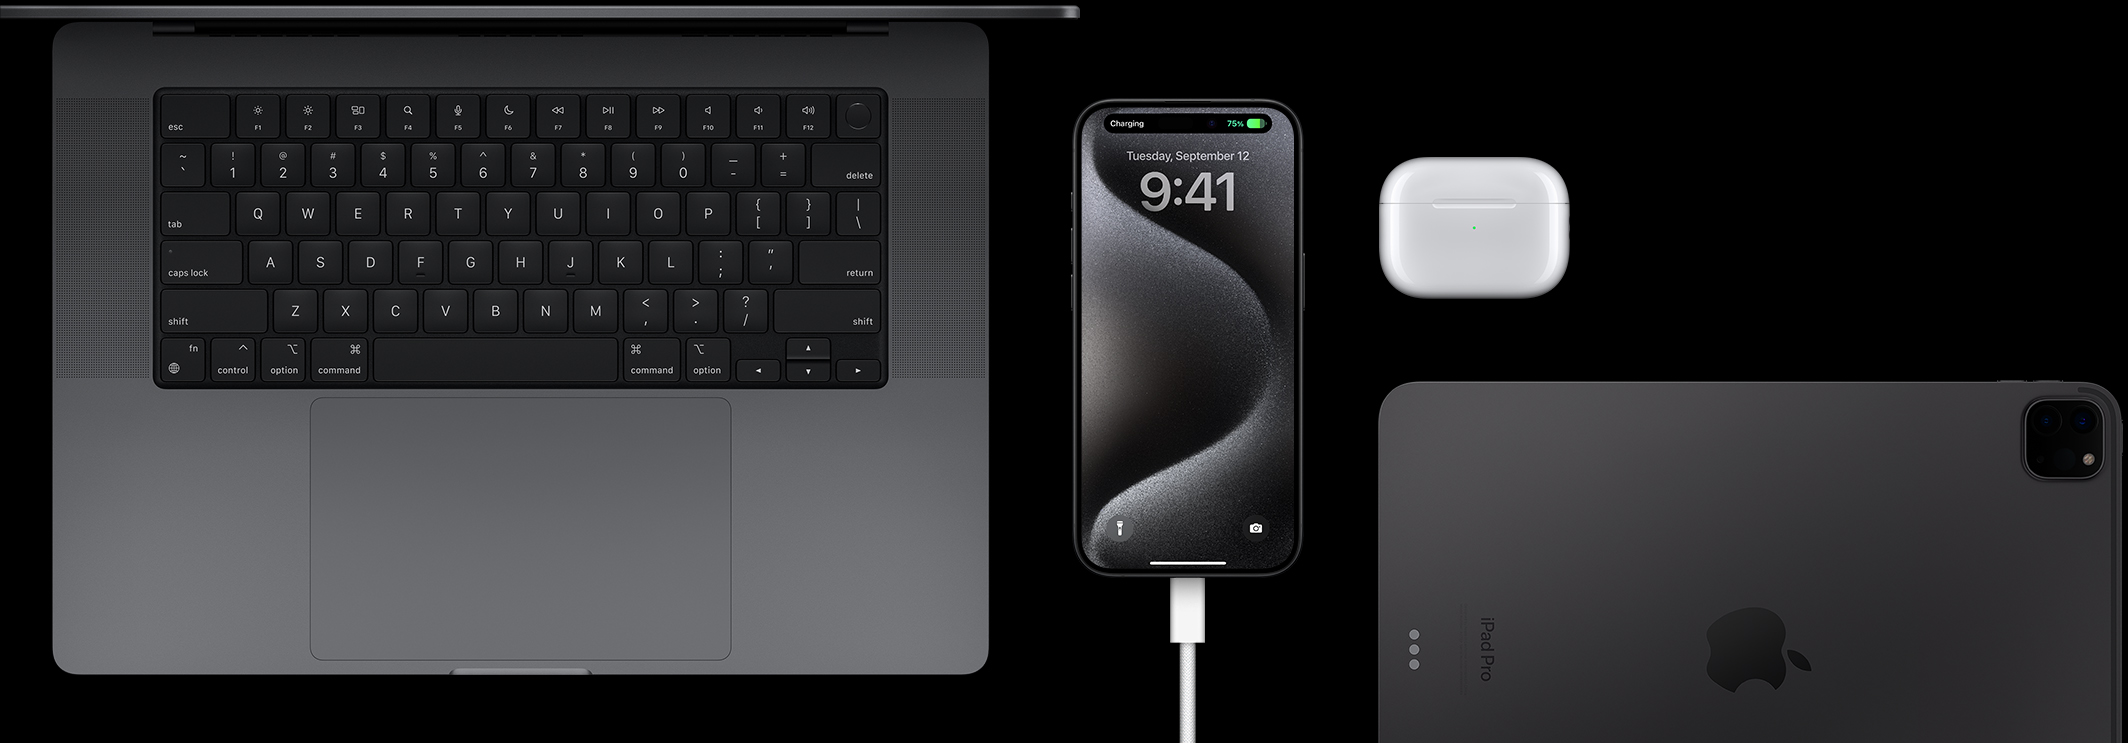 iPhone 15 Pro med en USB-C-ledning koblet til, omgitt av en MacBook Pro, AirPods Pro og en iPad